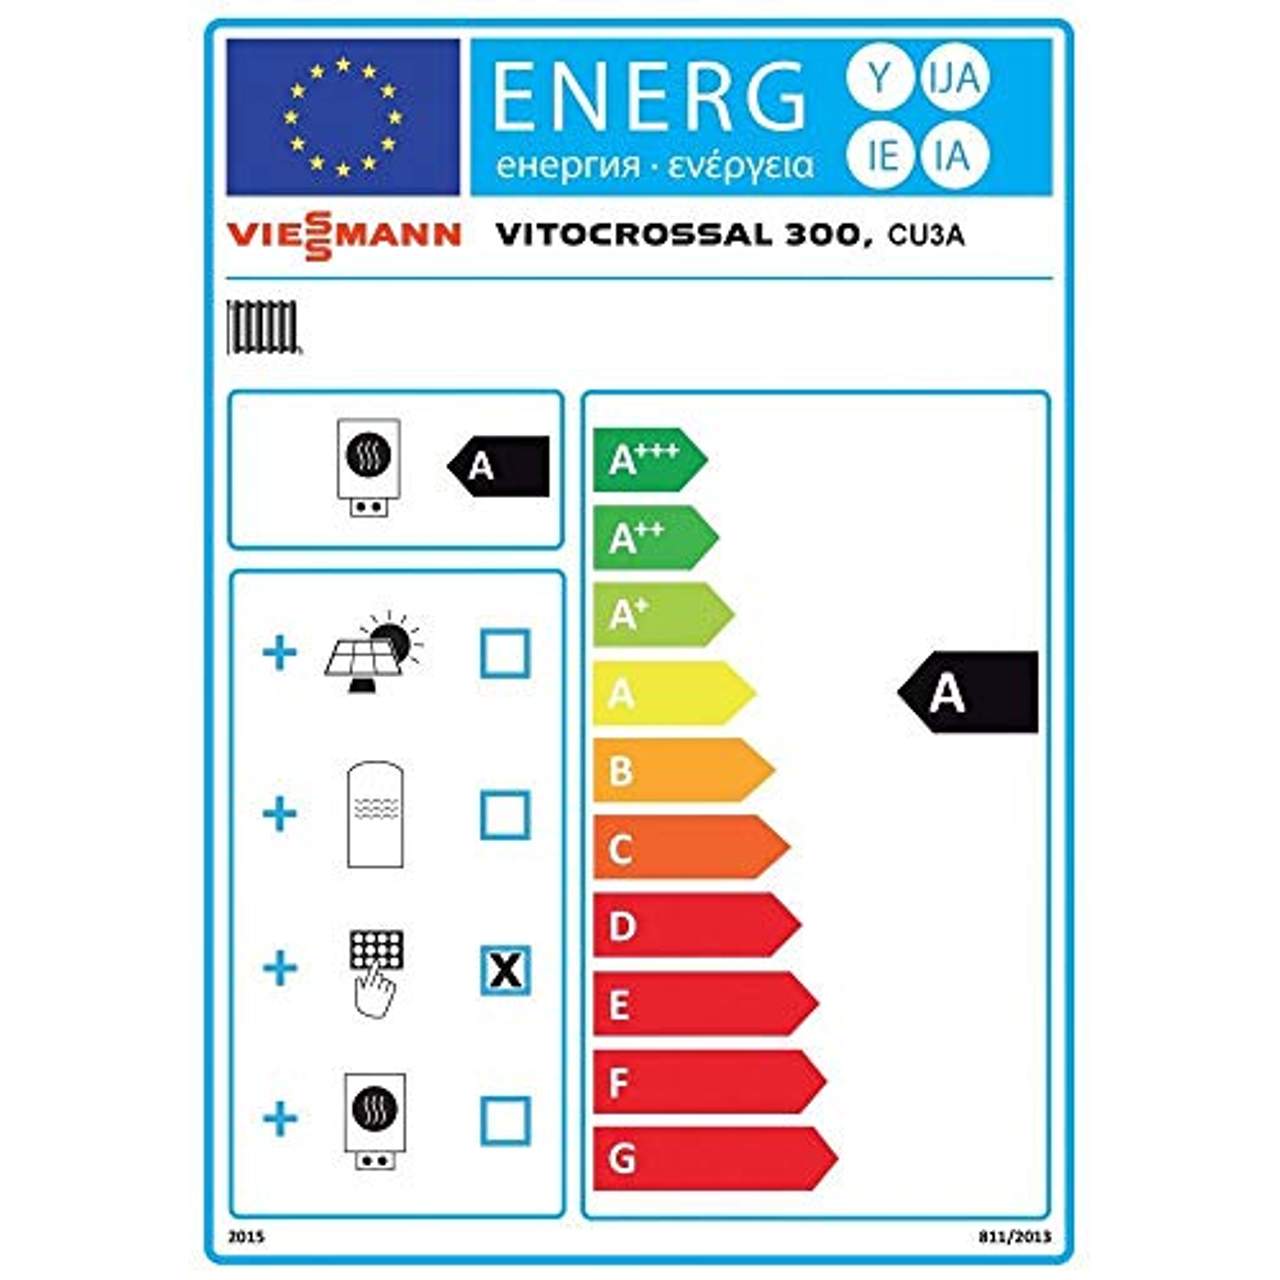 Viessmann Paket Vitocrossal 300 13 kW Gas Brennwert Kessel Speicher Vitocell